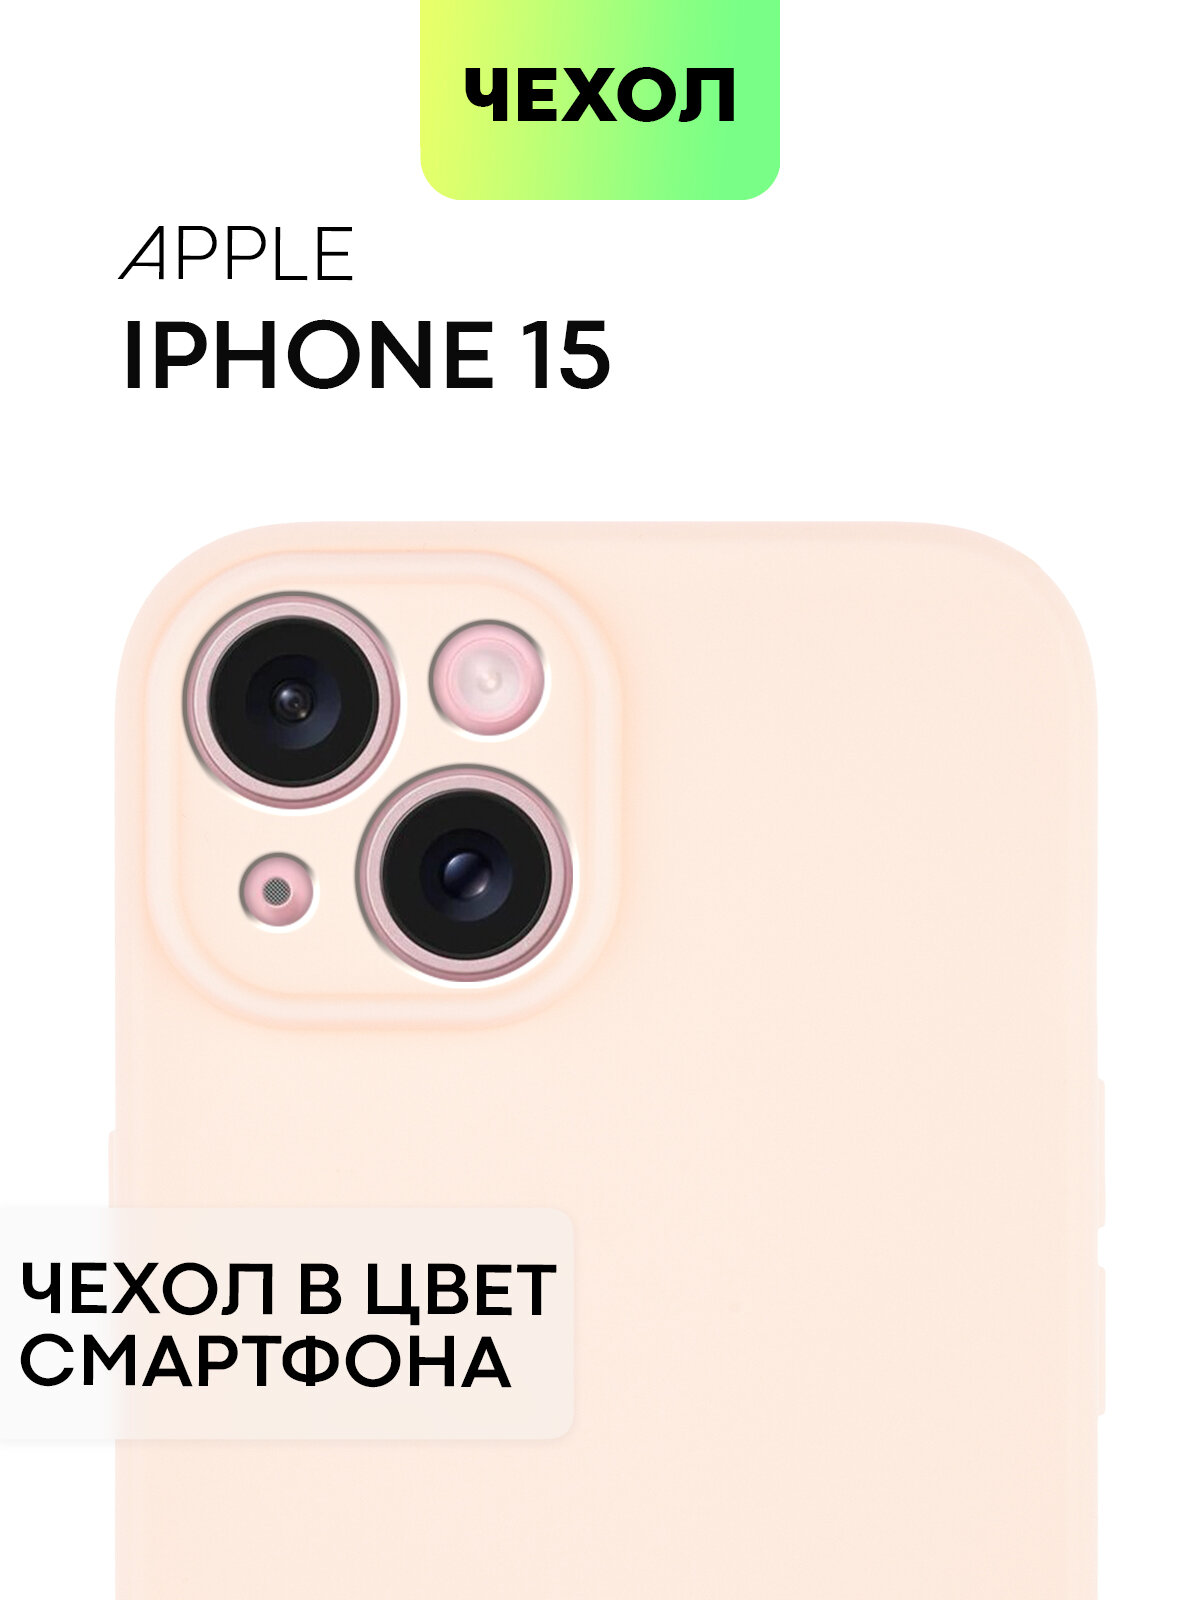 Чехол BROSCORP для Apple iPhone 15 (Эпл Айфон 15), тонкий, силиконовый чехол, с матовым покрытием и защитой модуля камер, розовый